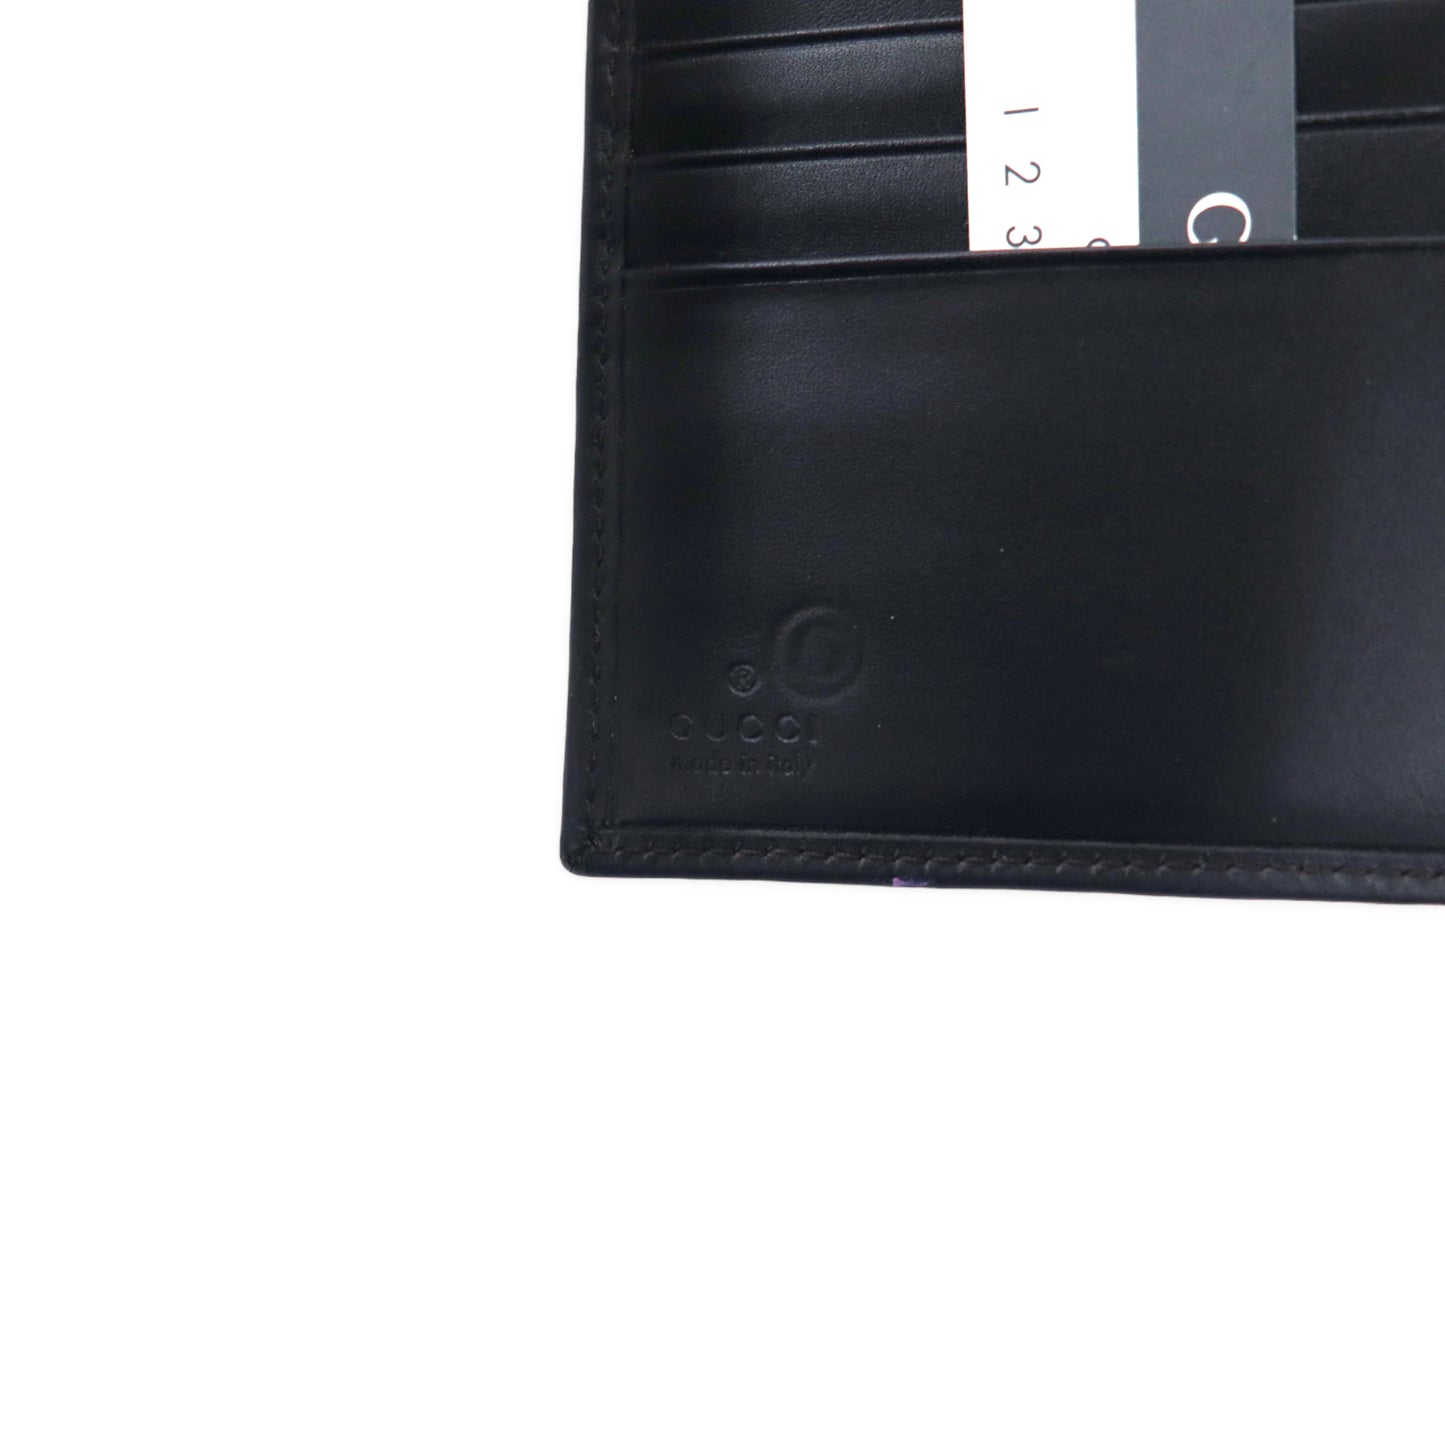 GUCCI Wホック ジャッキー 2つ折り財布 ブラック スエード レザー 035 3661 2169 イタリア製 未使用品